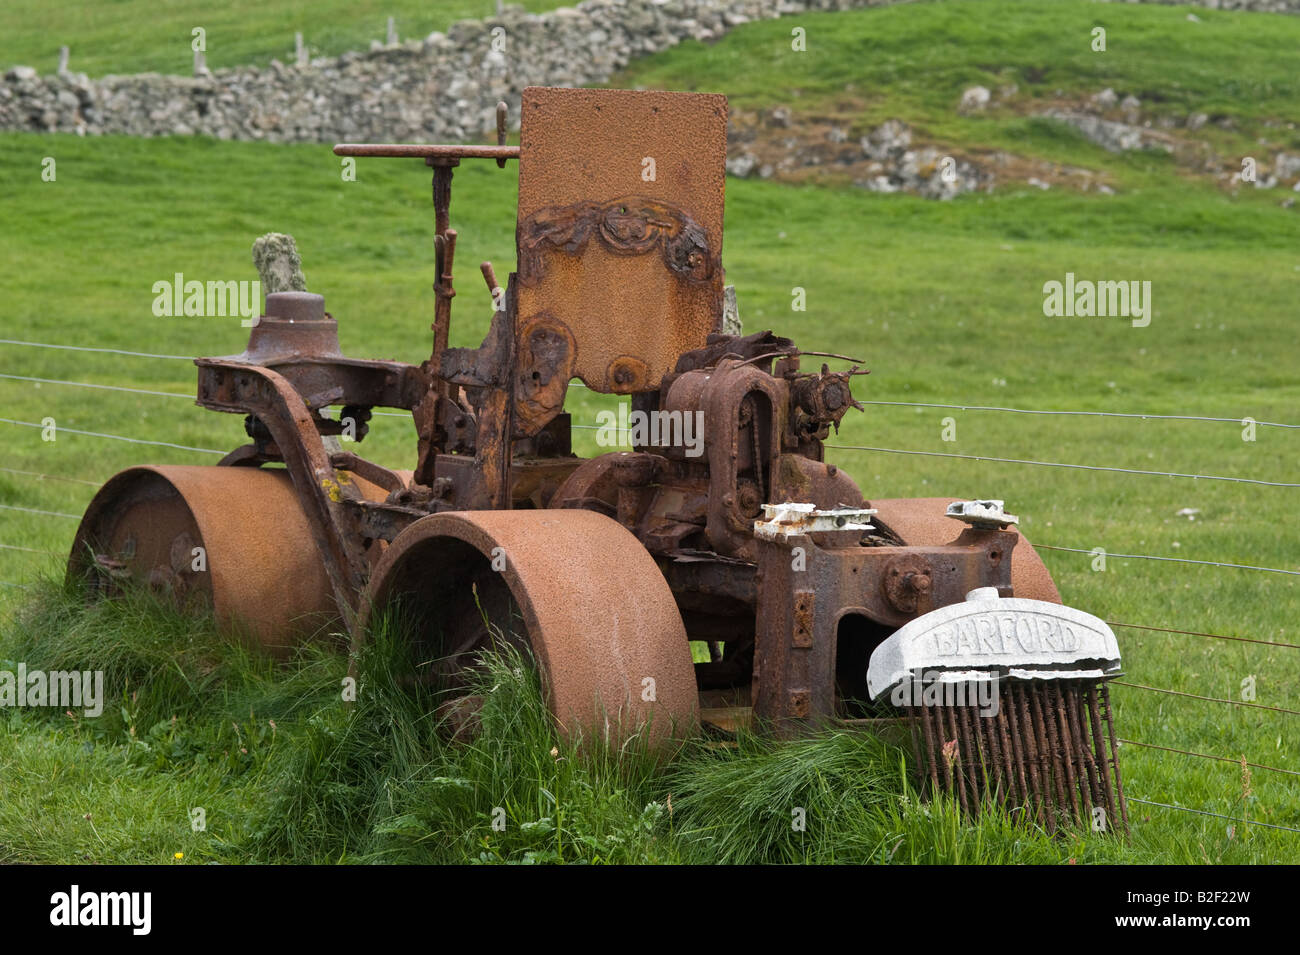 Barford rullo, rusty macchinari abbandonati, del pascolo, sul lato della strada, Fair Isle, Isole Shetland Scozia, Giugno Foto Stock